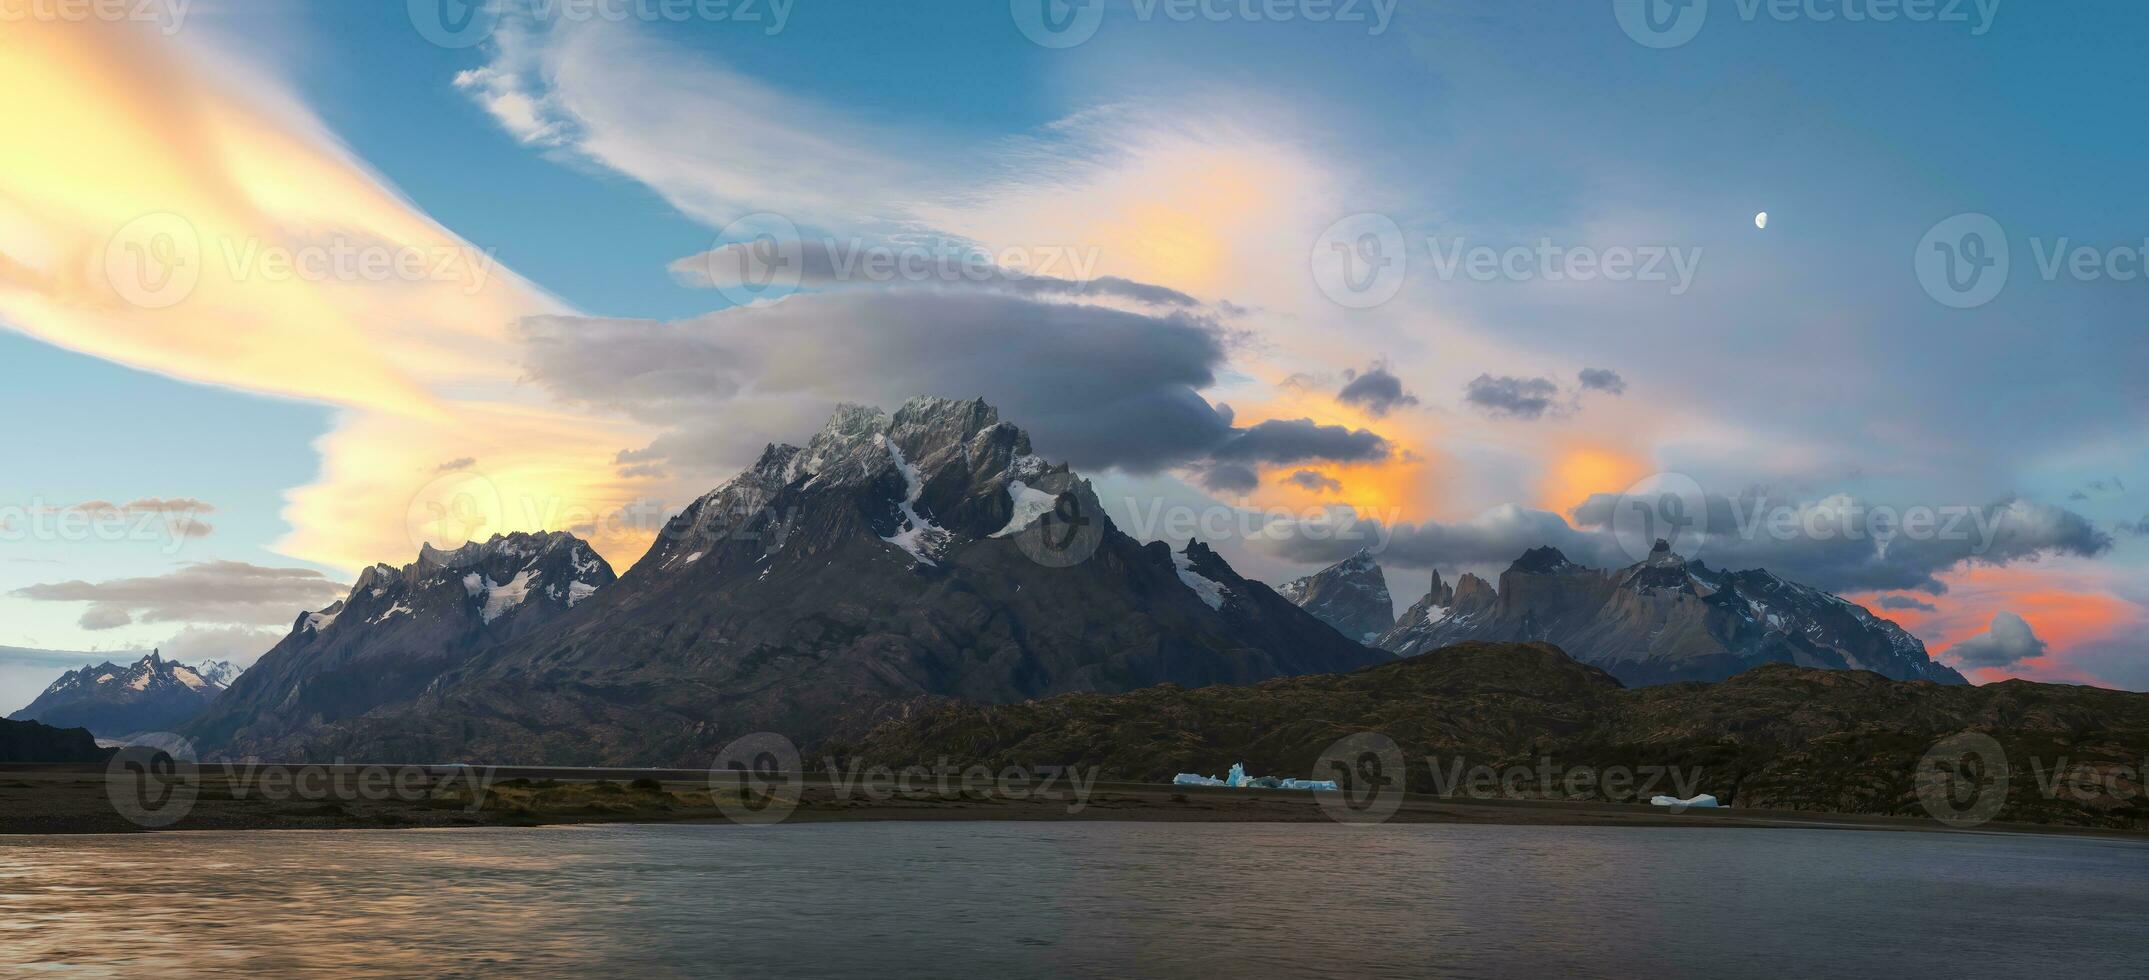 cuernos del paine och lago grå på solnedgång, torres del paine nationell parkera, chilenska patagonien, chile foto